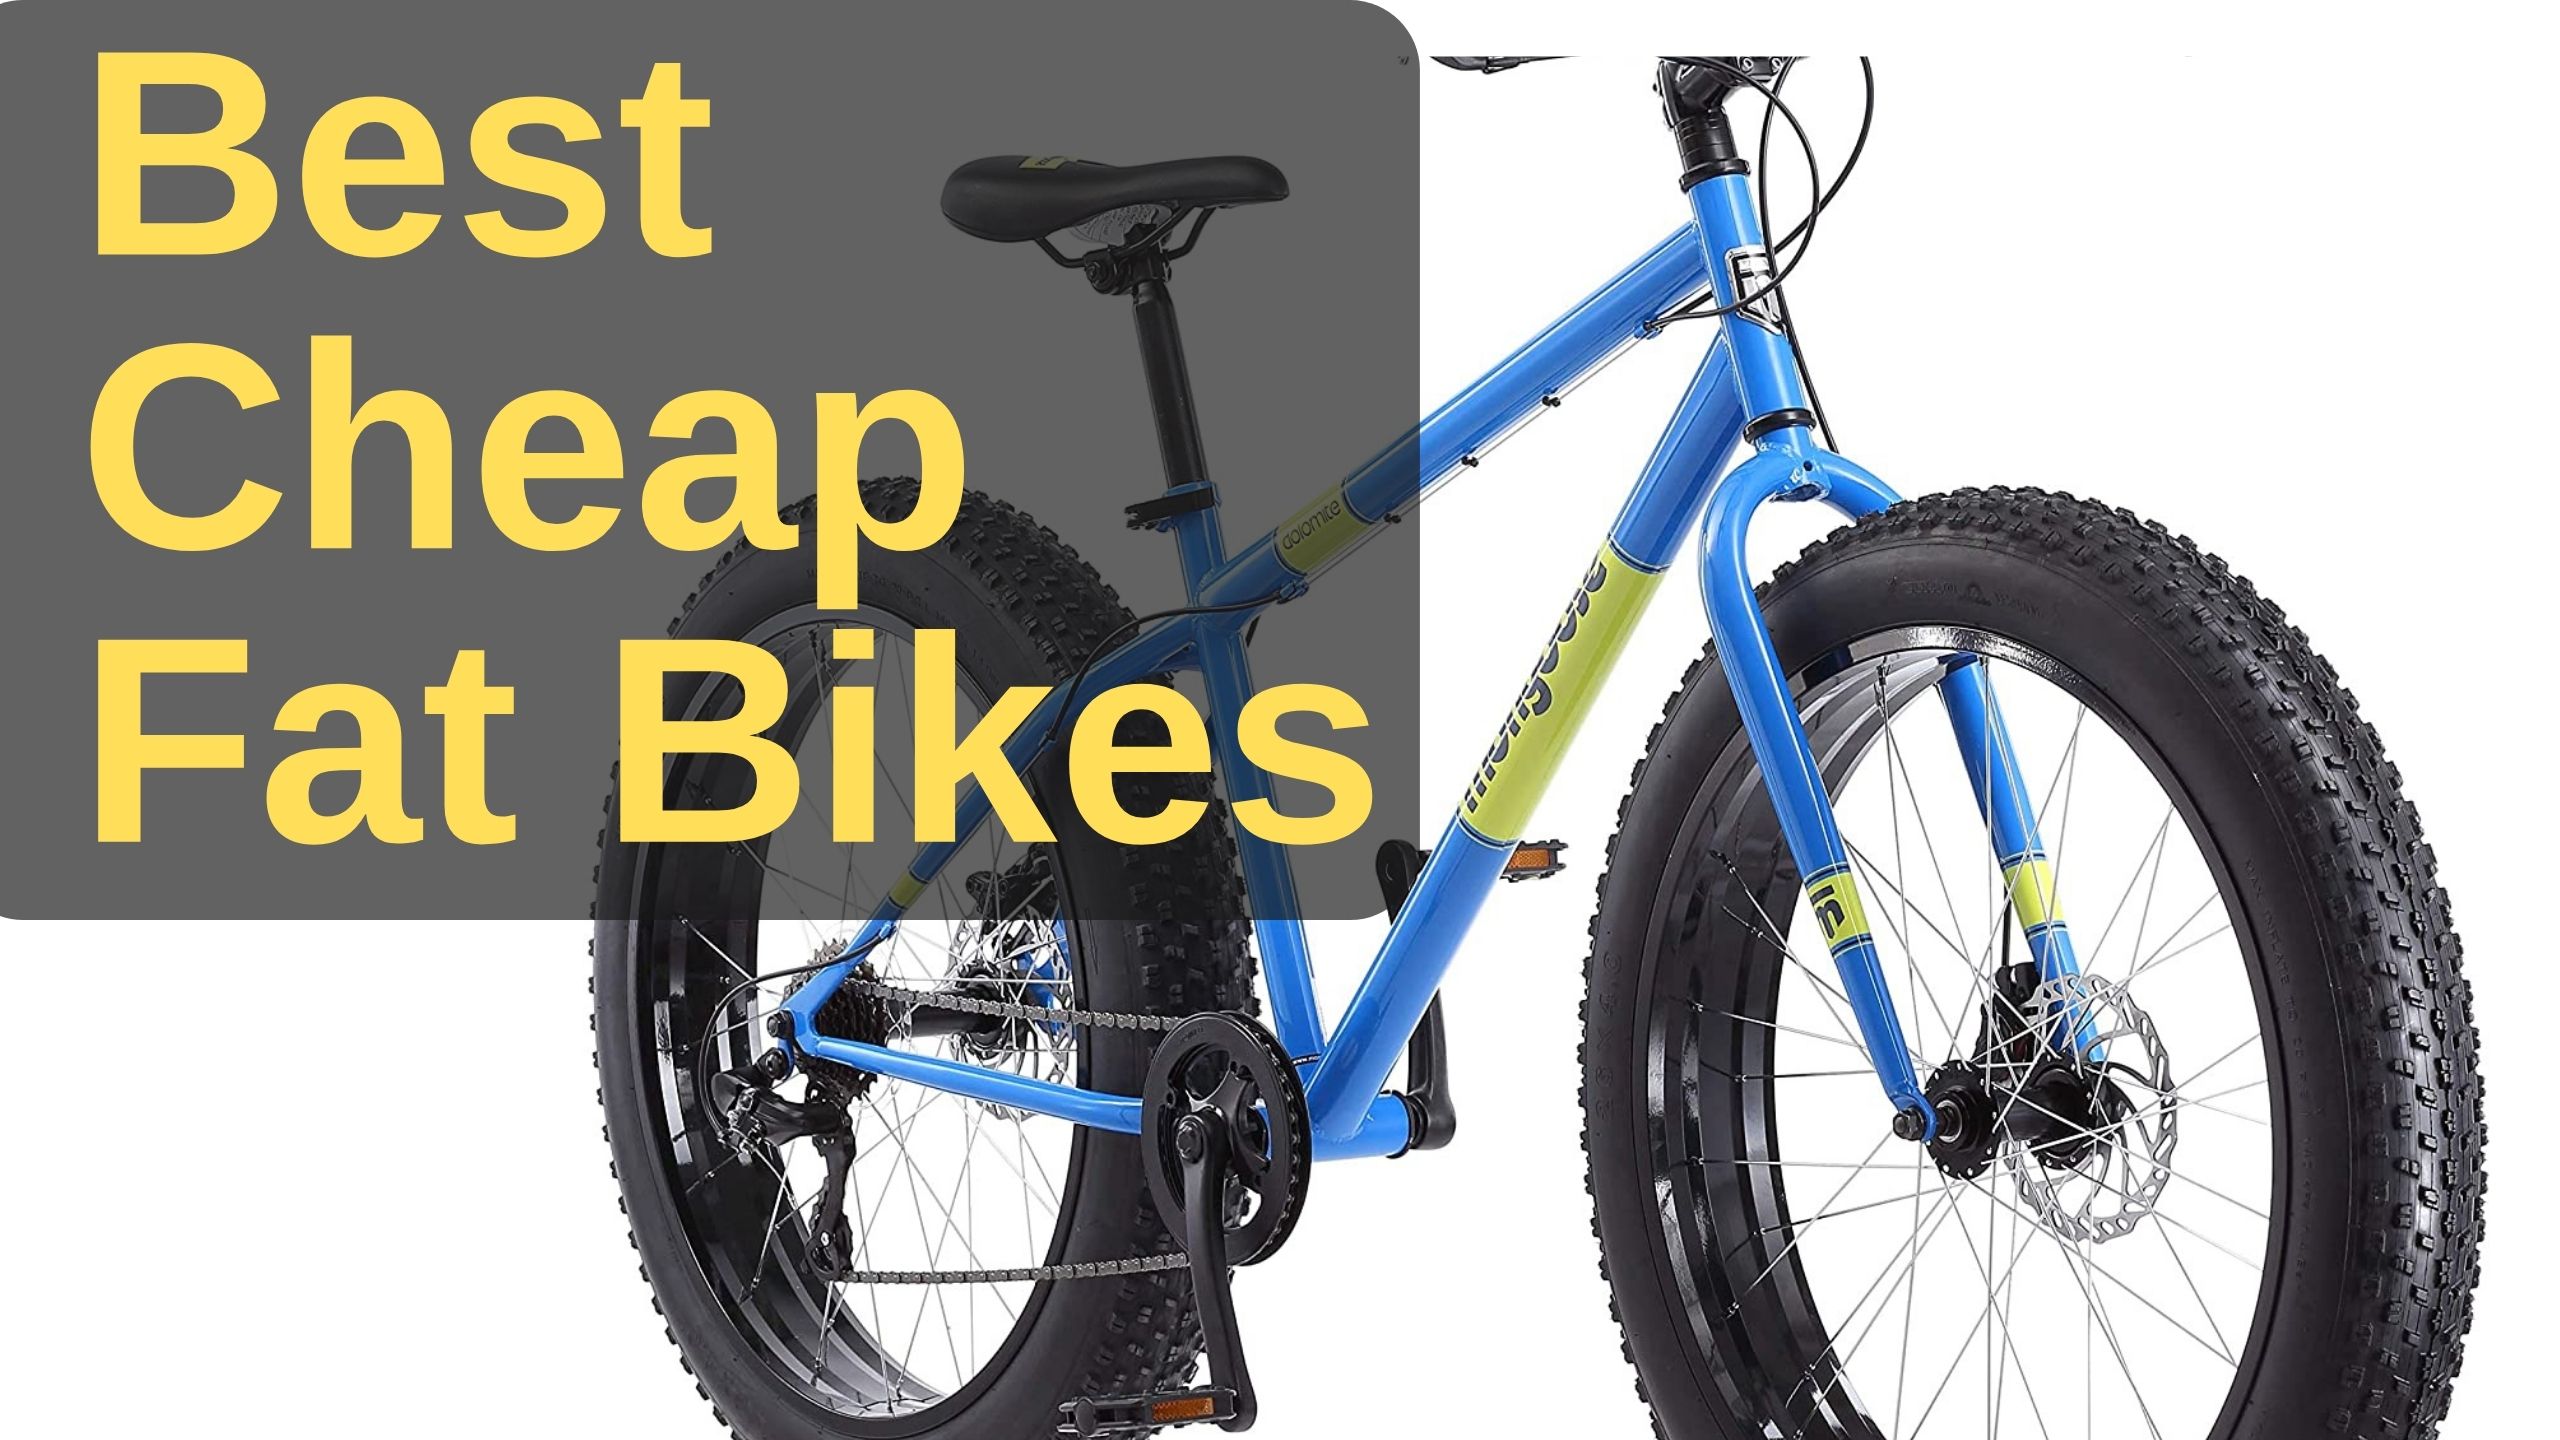 Best Cheap Fat Bikes